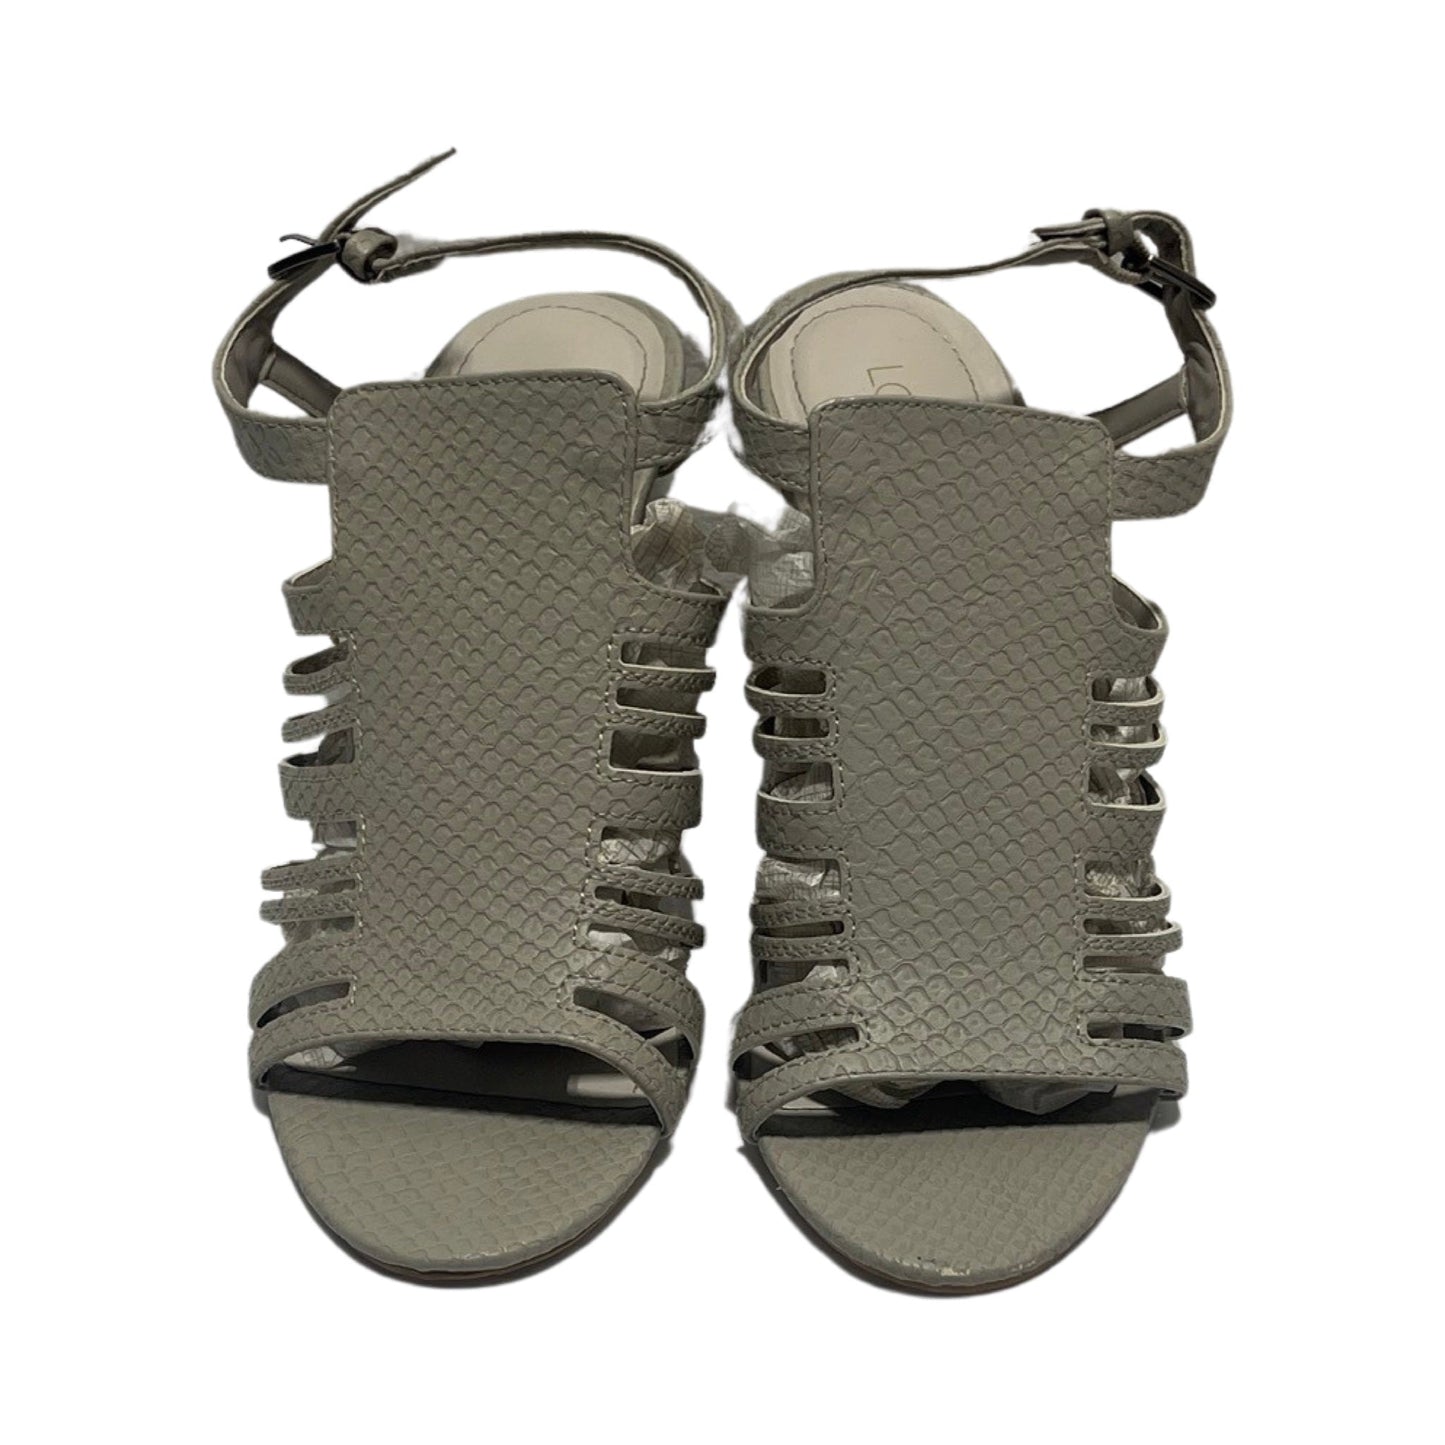 Sandals Heels Stiletto By Lauren Conrad  Size: 7